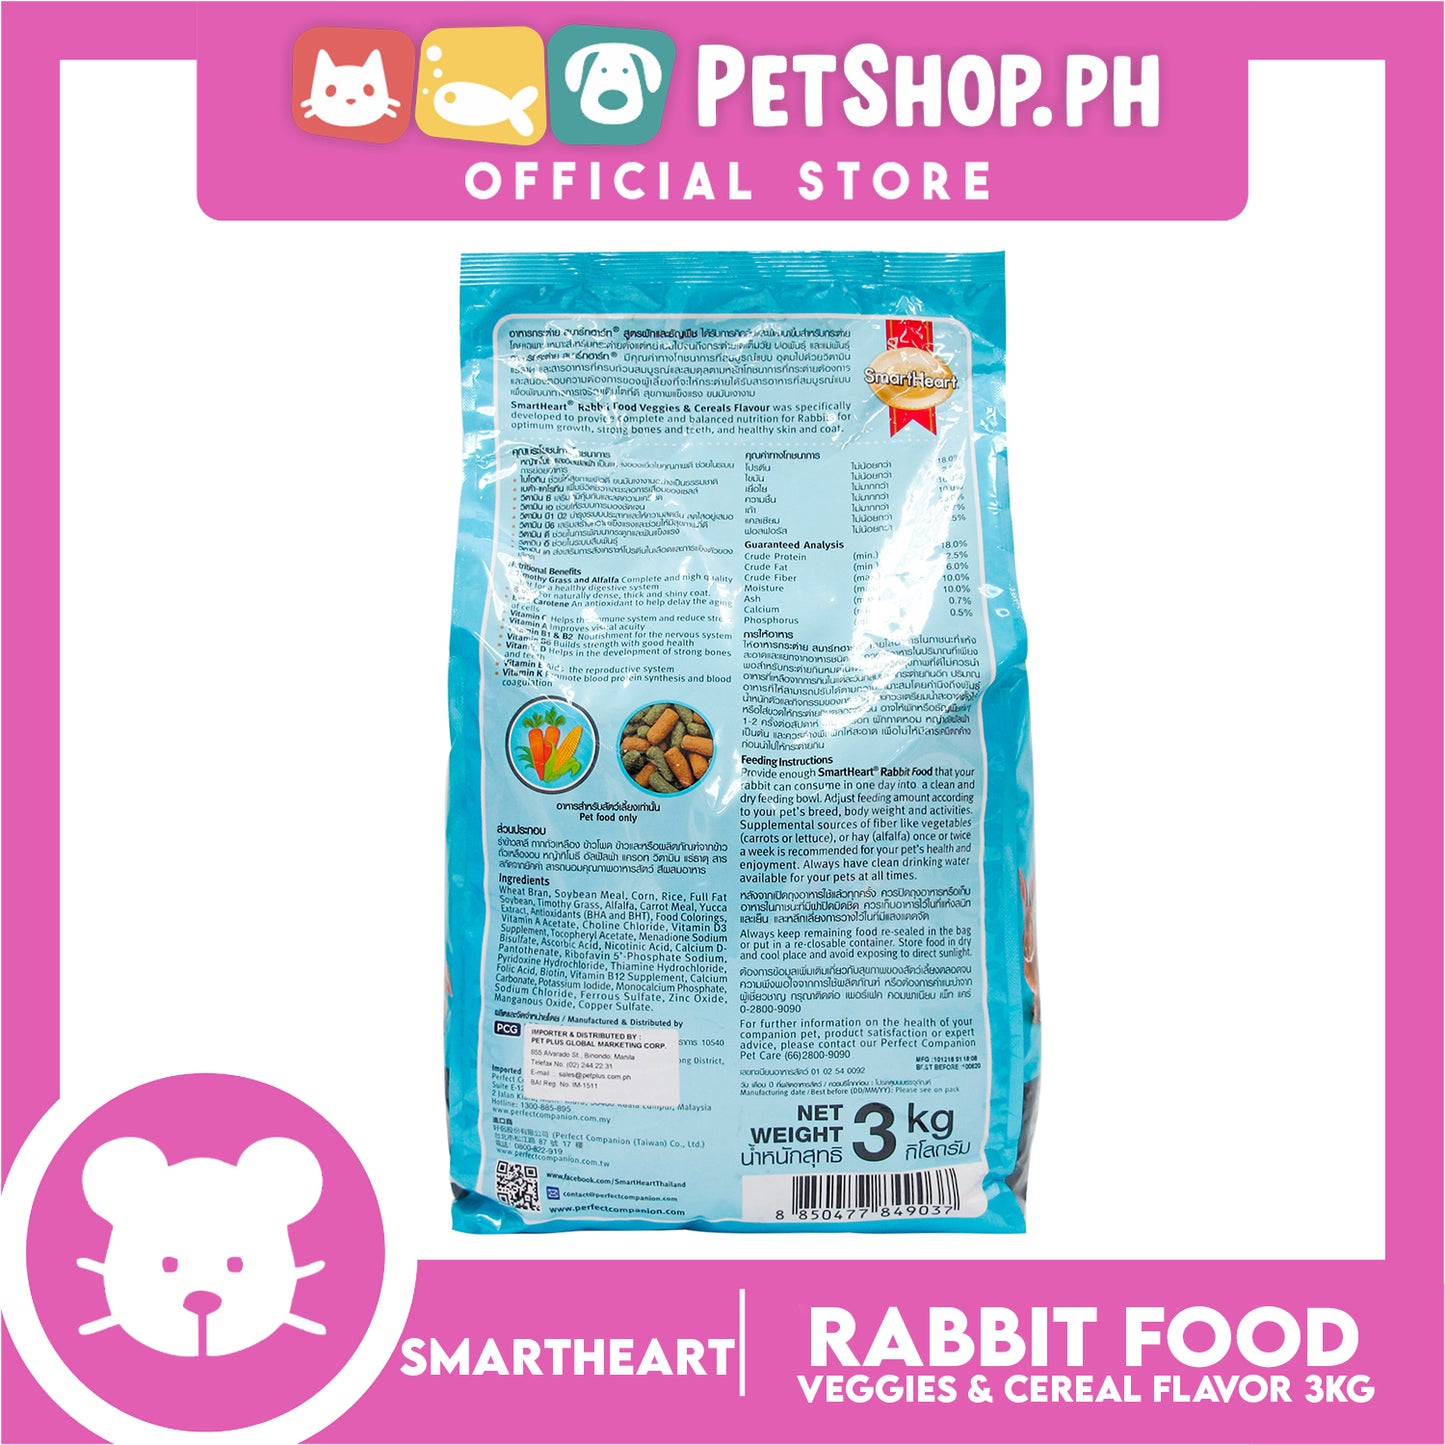 SmartHeart Rabbit Food Veggies & Cereals Flavor 3kg